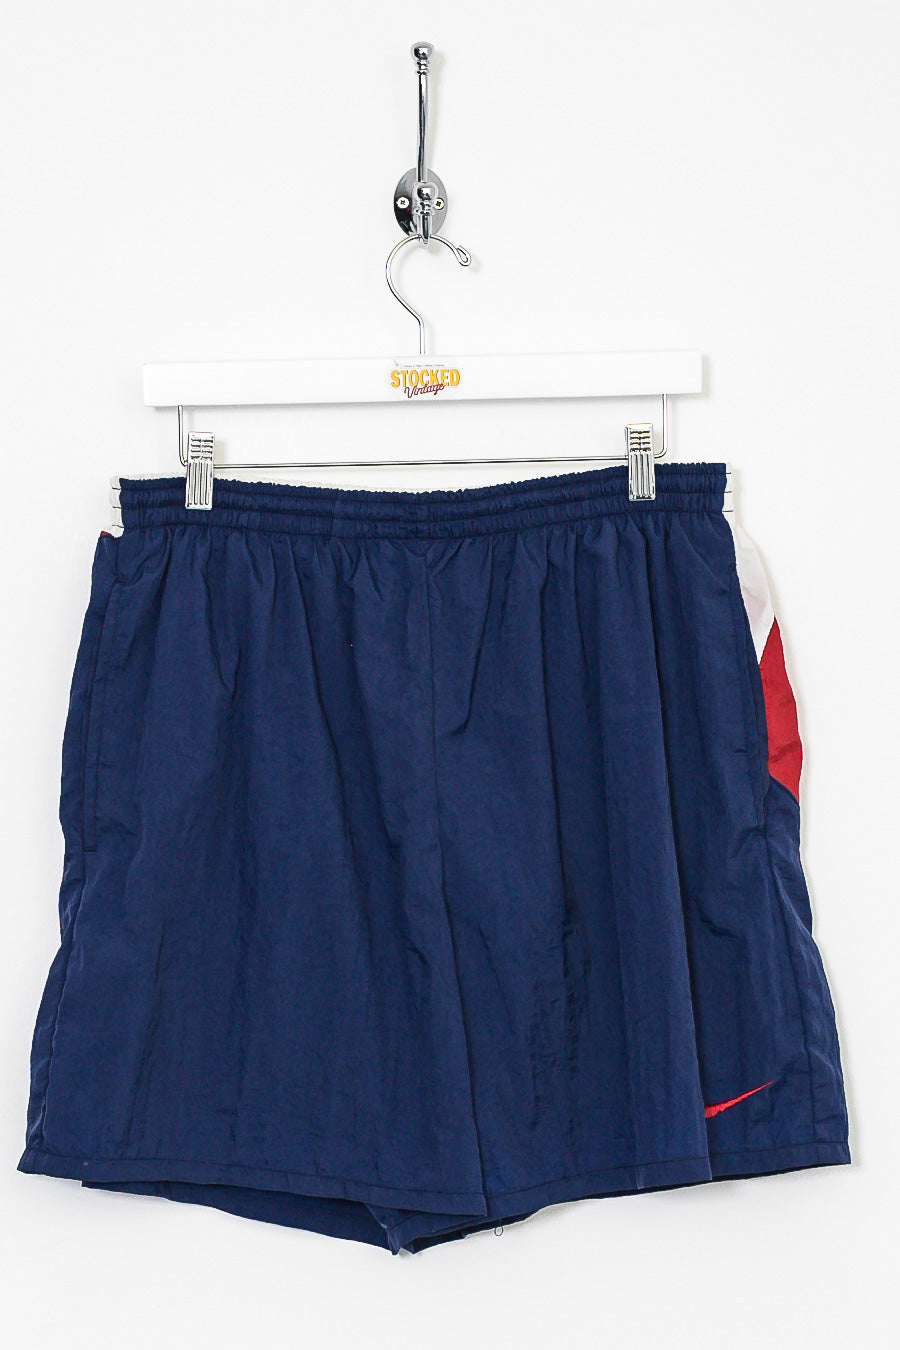 90s Nike Swoosh Shorts (L)